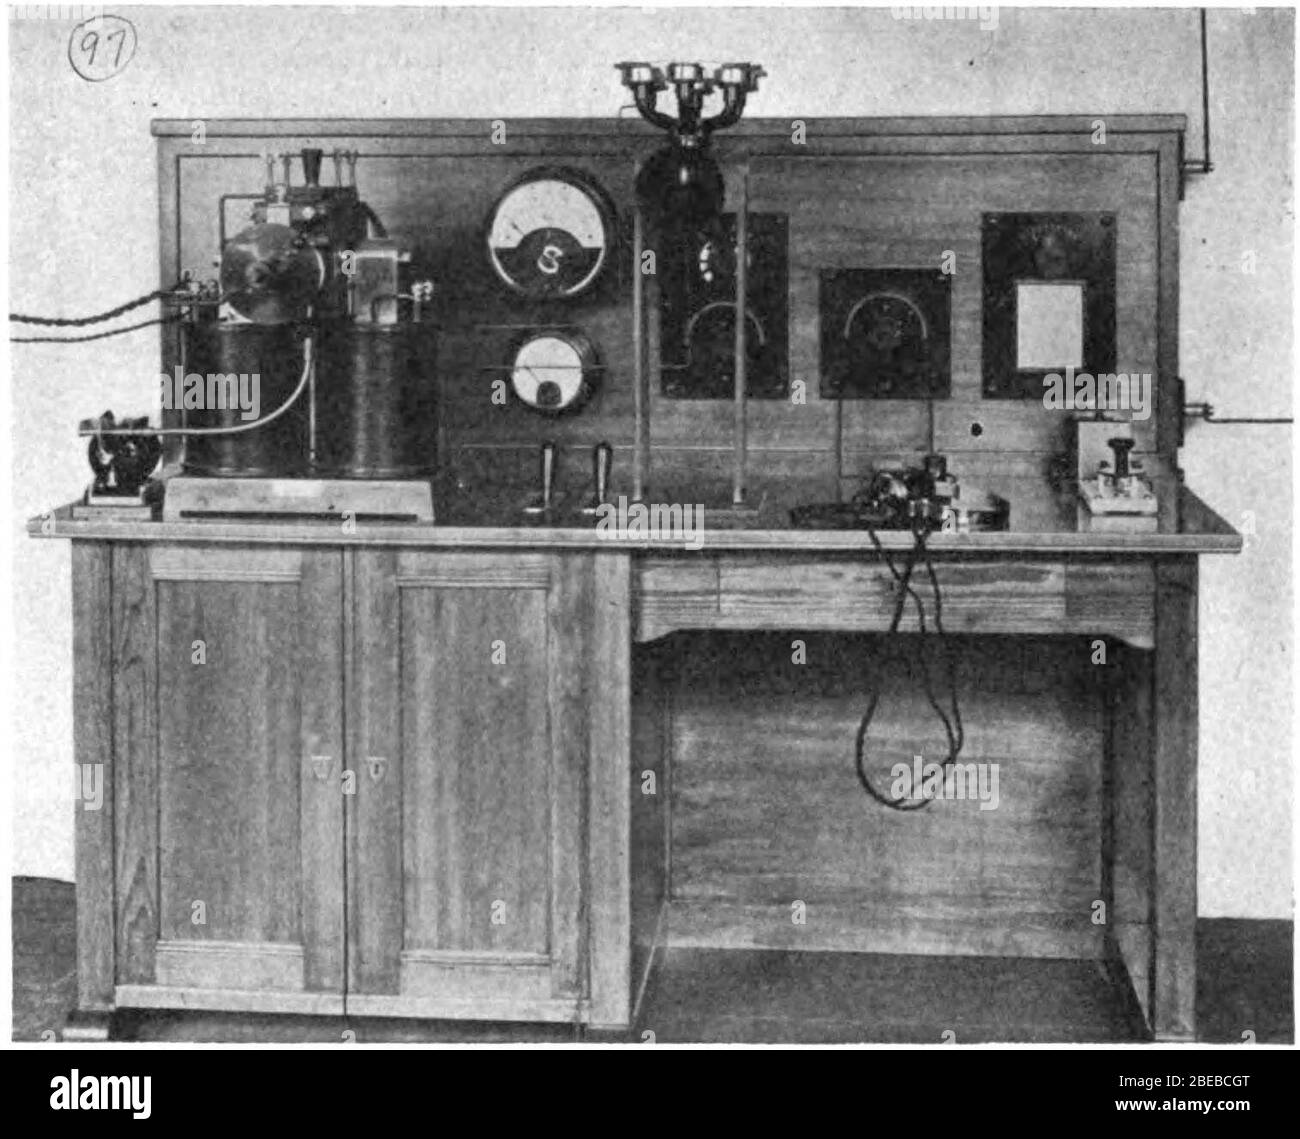 Español: Una de las primeras estaciones de radiotelefonía de voz AM  utilizadas en los barcos, 1919, realizada por J. Berliner Co. De Viena.  Utiliza un transmisor de radio de arco Poulsen de